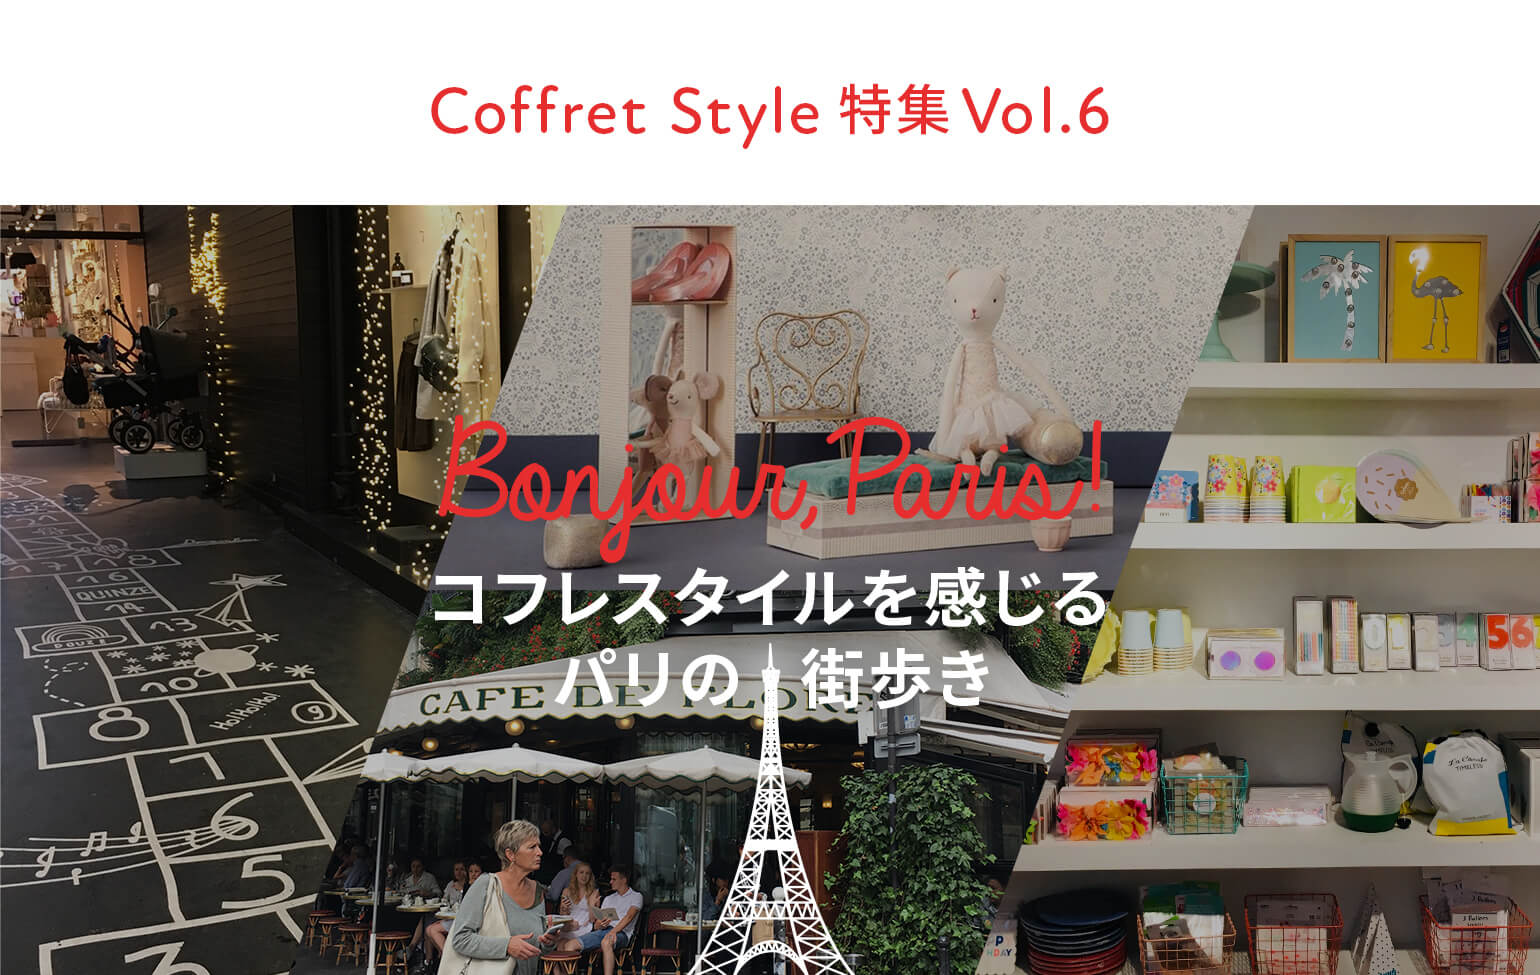 CoffretStyle特集Vol.6 コフレスタイルを感じるパリの街歩き